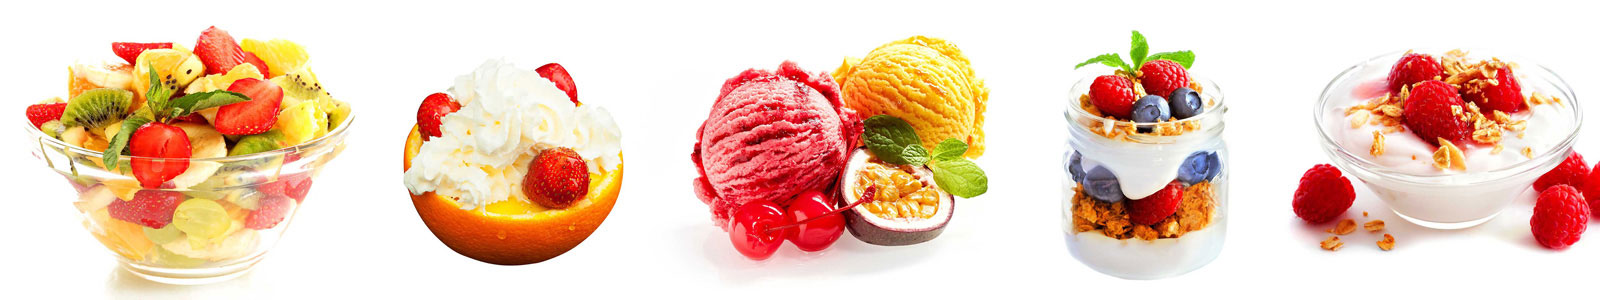 №6165 - Фруктово-ягодные десерты на белом фоне